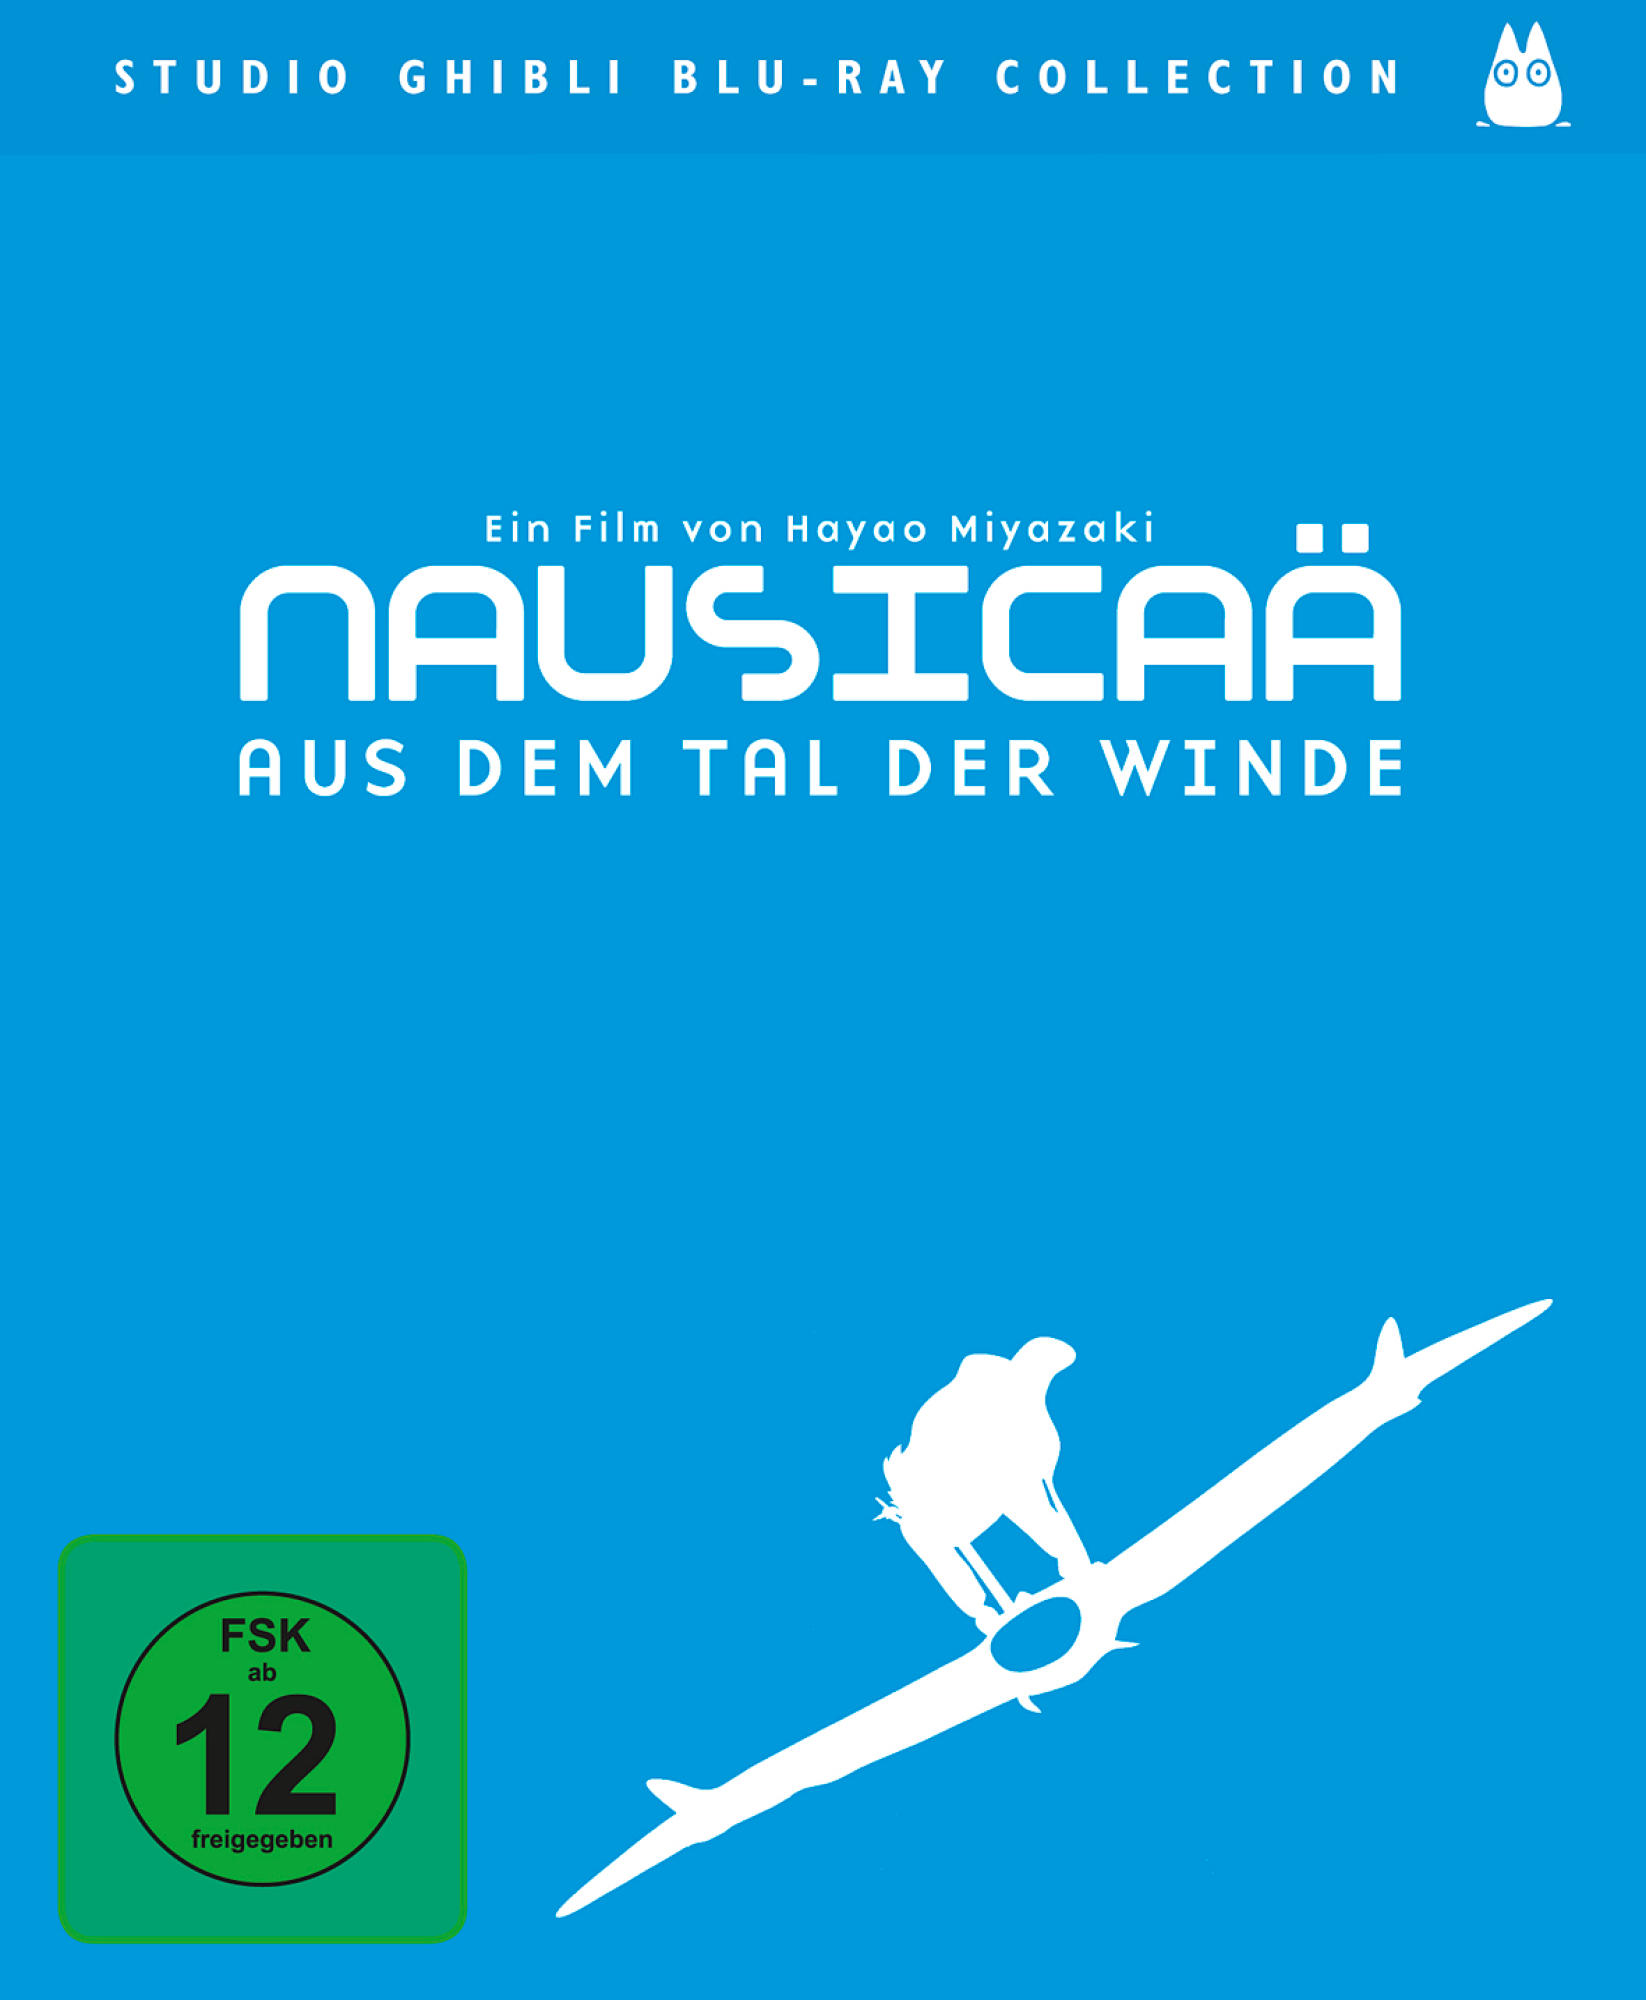 NAUSICAAE - AUS DEM DER TAL Blu-ray WINDE